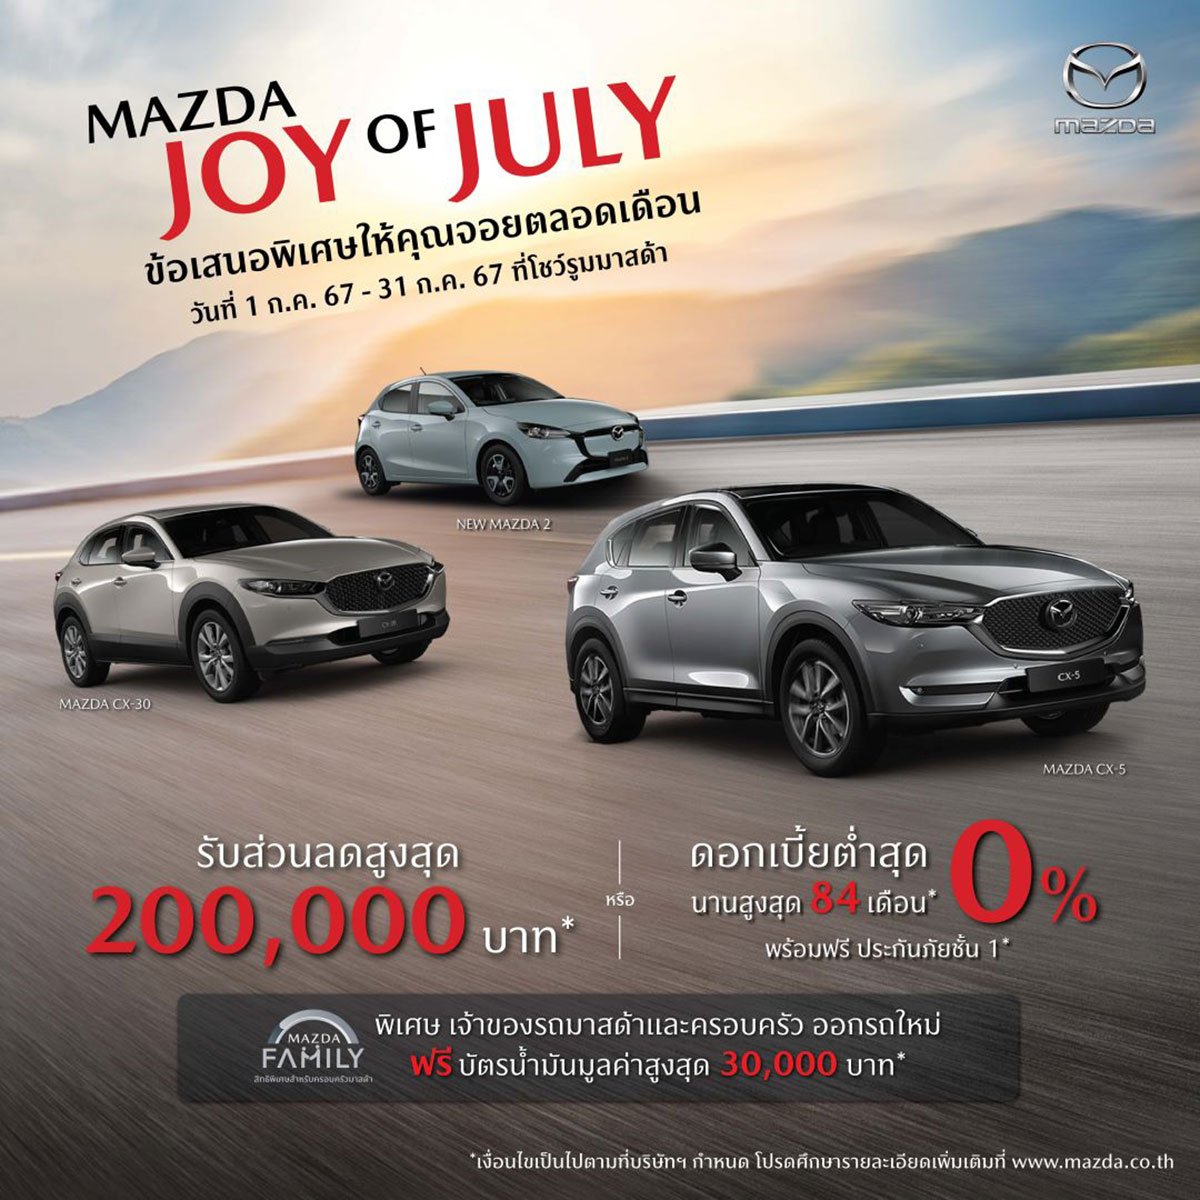 Mazda Joy of July